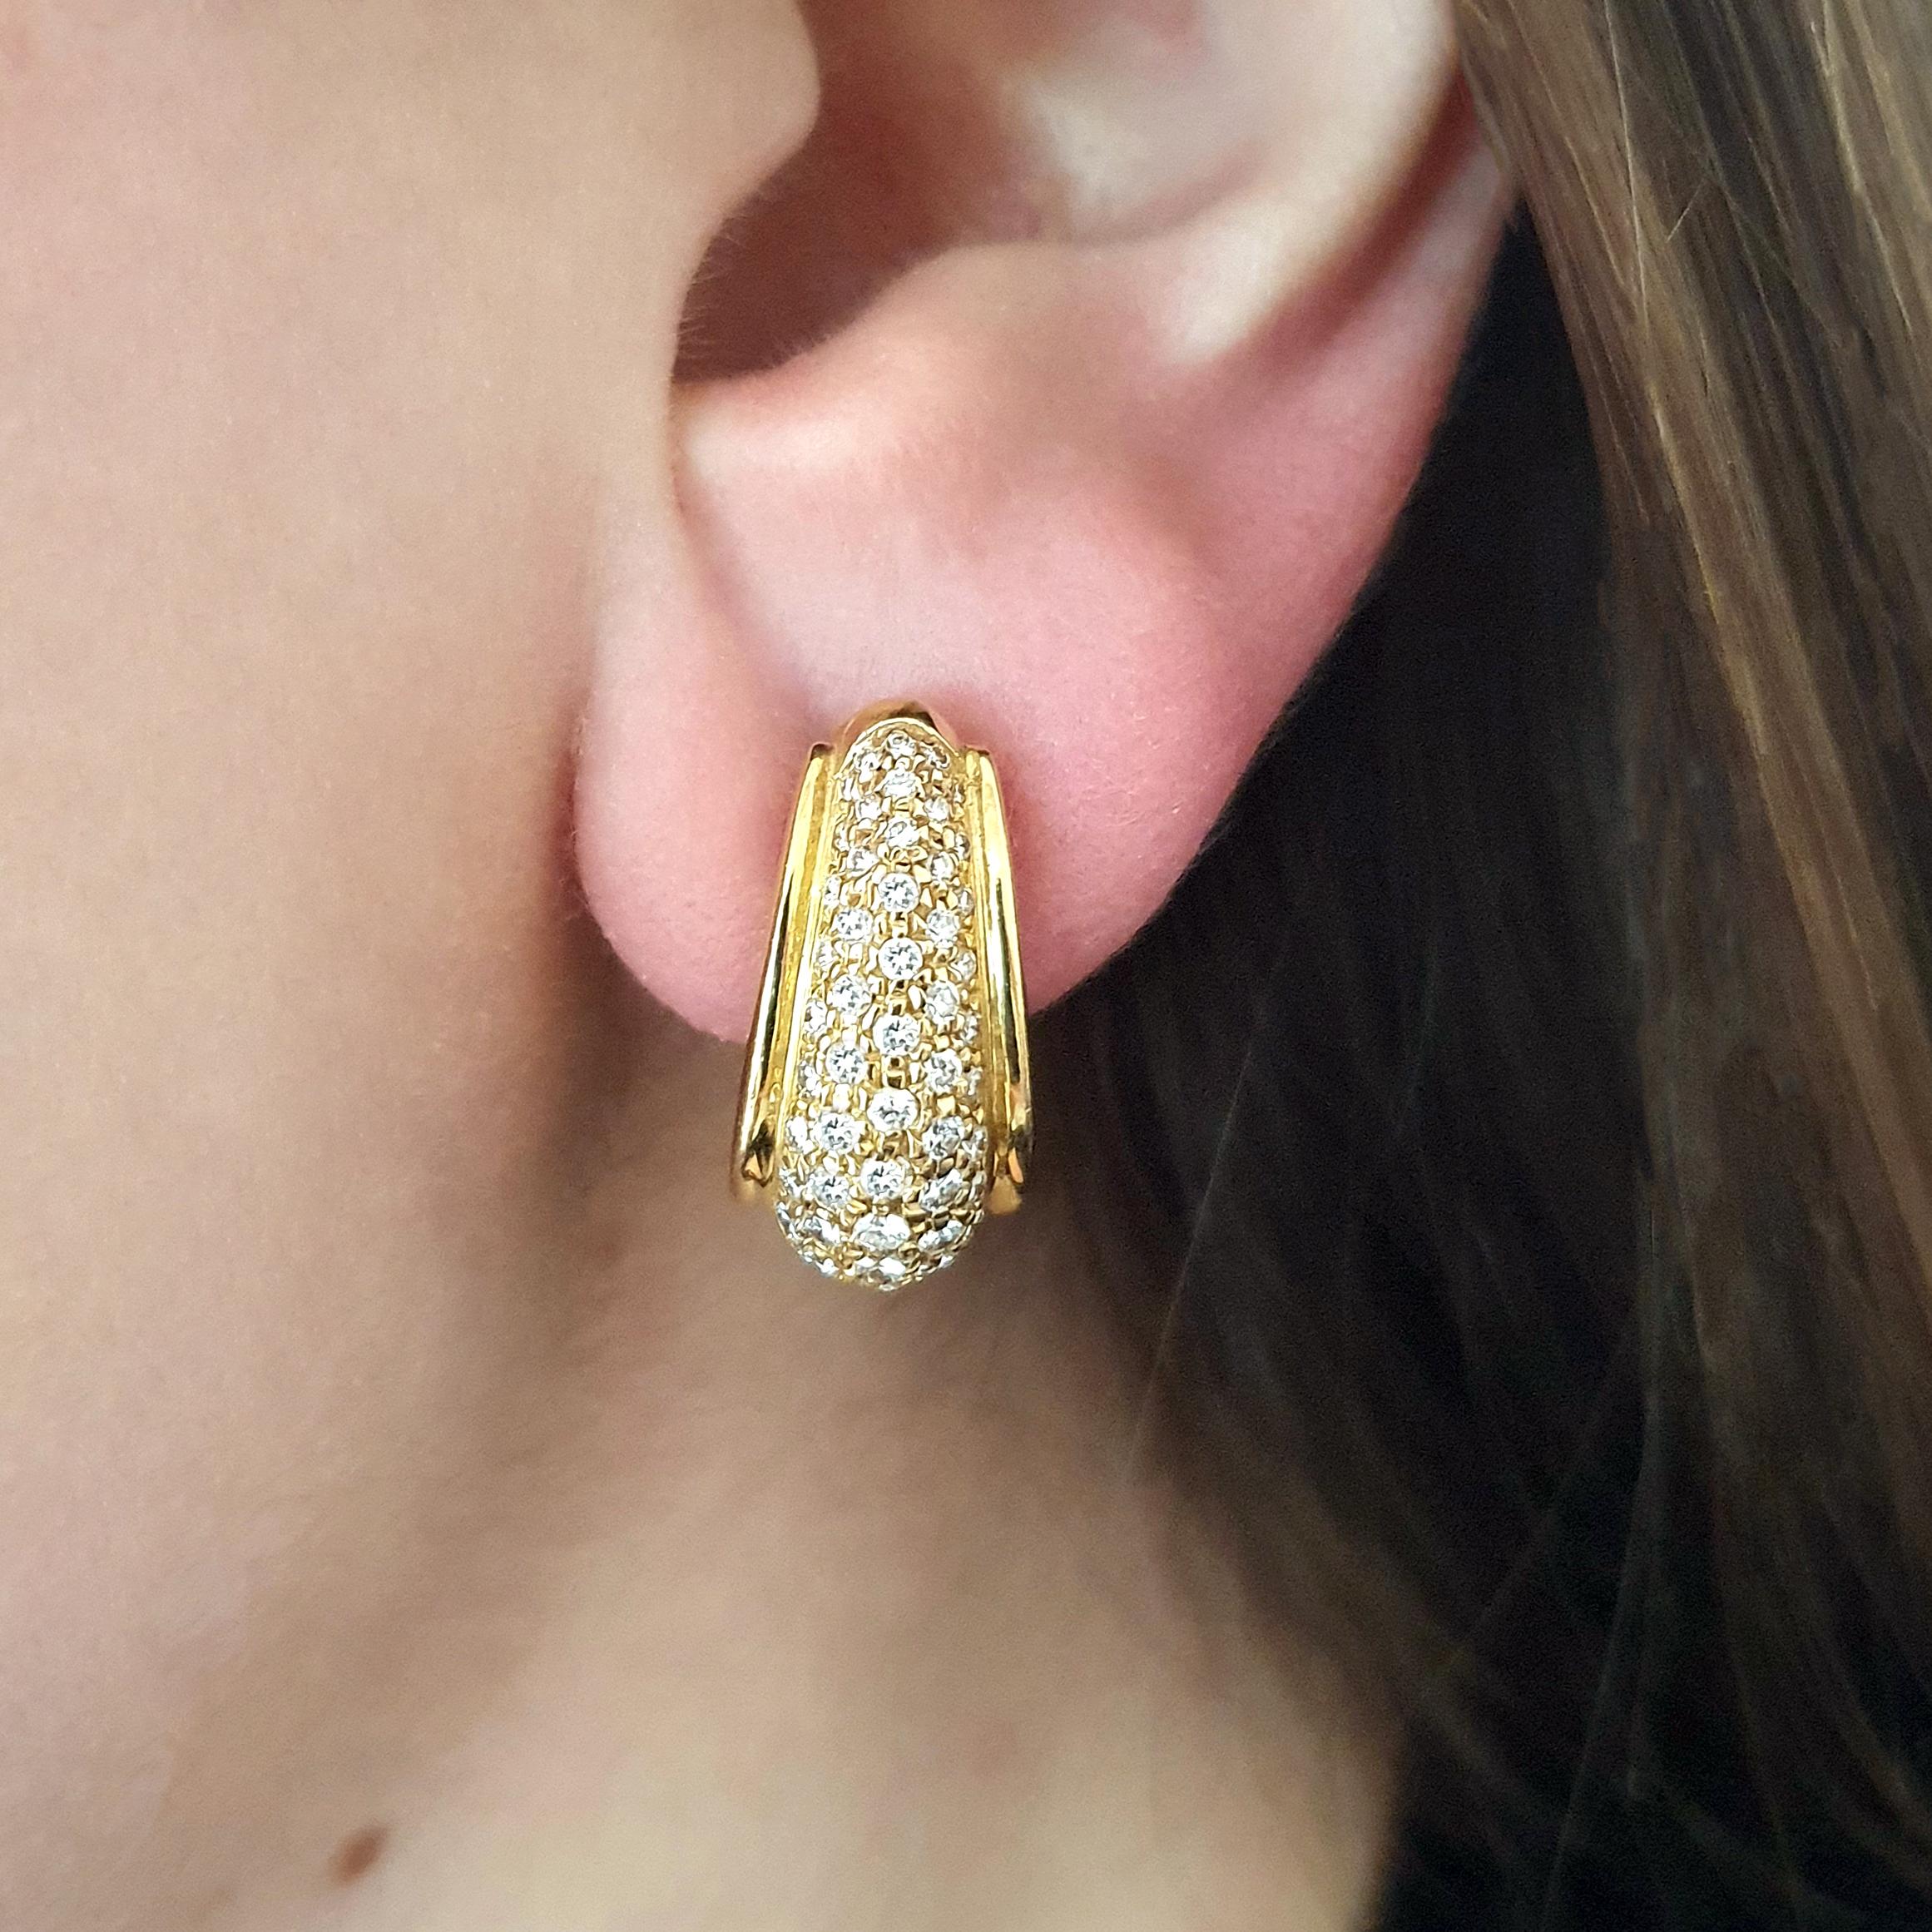 Clips d'oreilles en or jaune 18k avec diamants.

Hauteur totale : 0,79 pouce (2,00 centimètres).
Largeur au Maximum : 0,39 pouce (1,00 centimètre).
Poids total : 18,85 grammes.